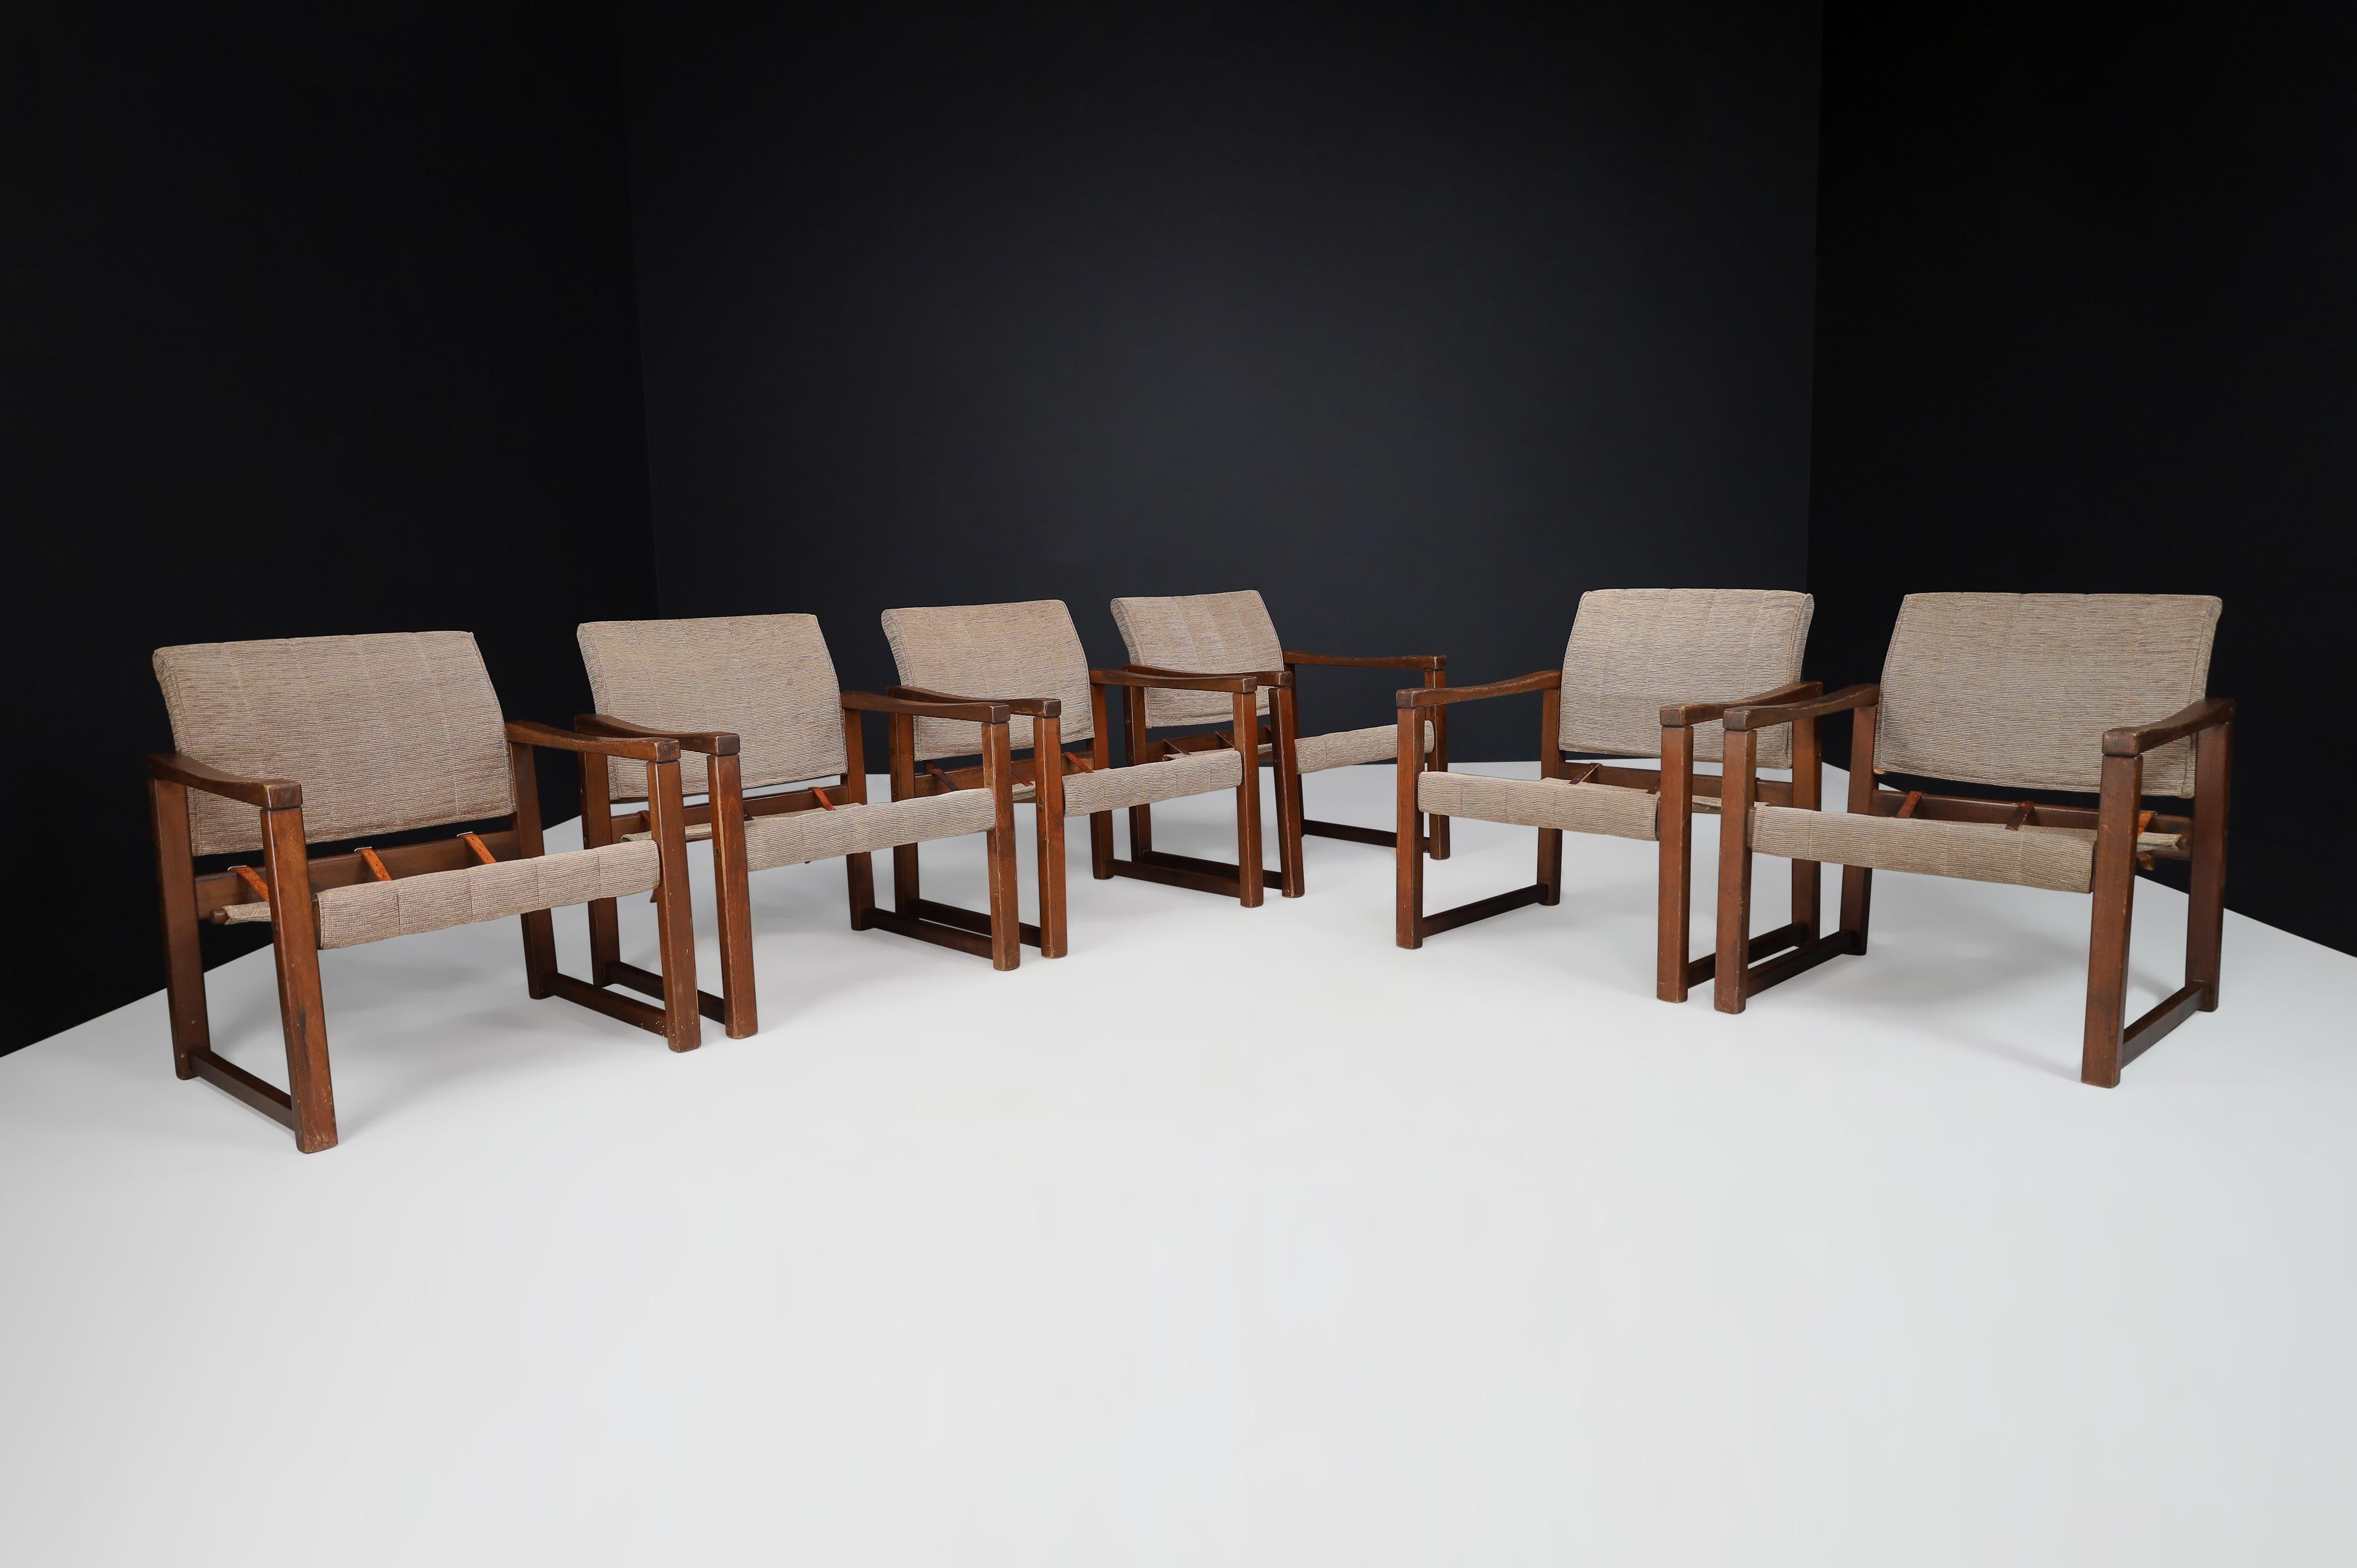 Chaises longues en pin et tissu de Karin Mobring, Suède, années 1970.

Karin Mobring a conçu ce fauteuil Ikea Classic Vintage Lounge en 1972. Il est fabriqué en bois de pin scandinave massif et en tissu original. Le design et l'aspect de cette